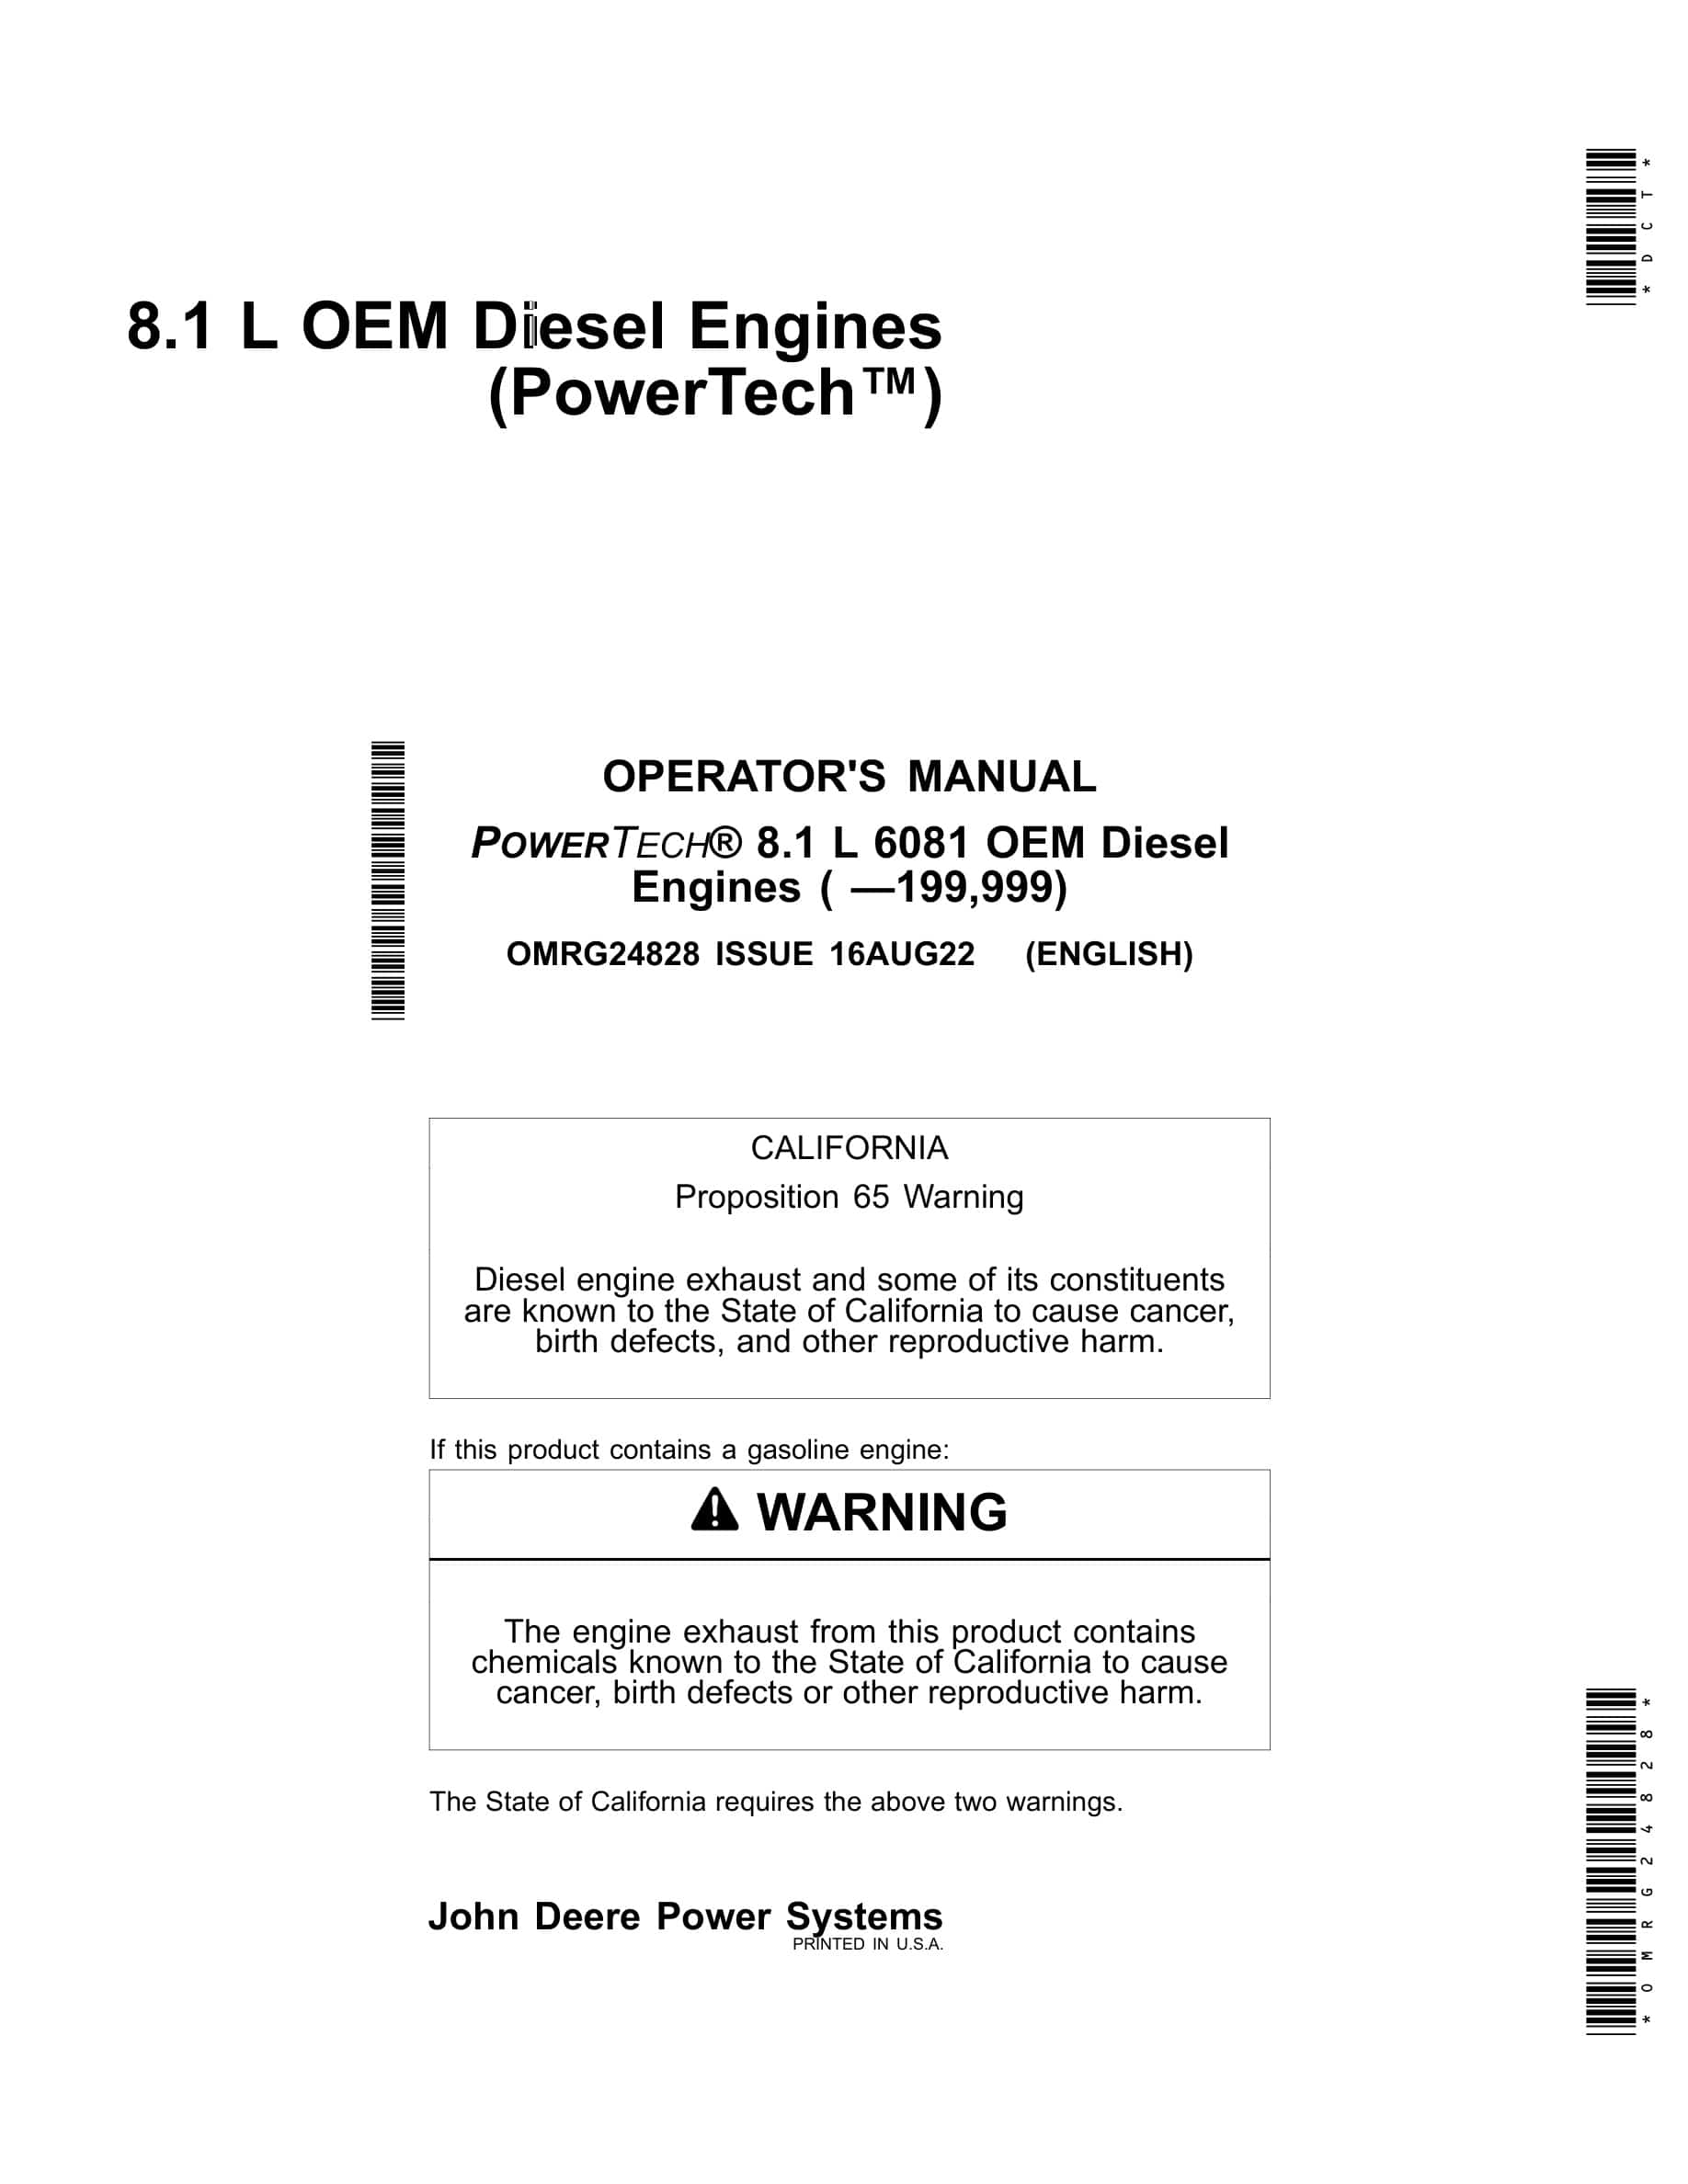 John Deere PowerTech 8.1 L 6081 OEM Diesel Engines Operator Manual OMRG24828-1